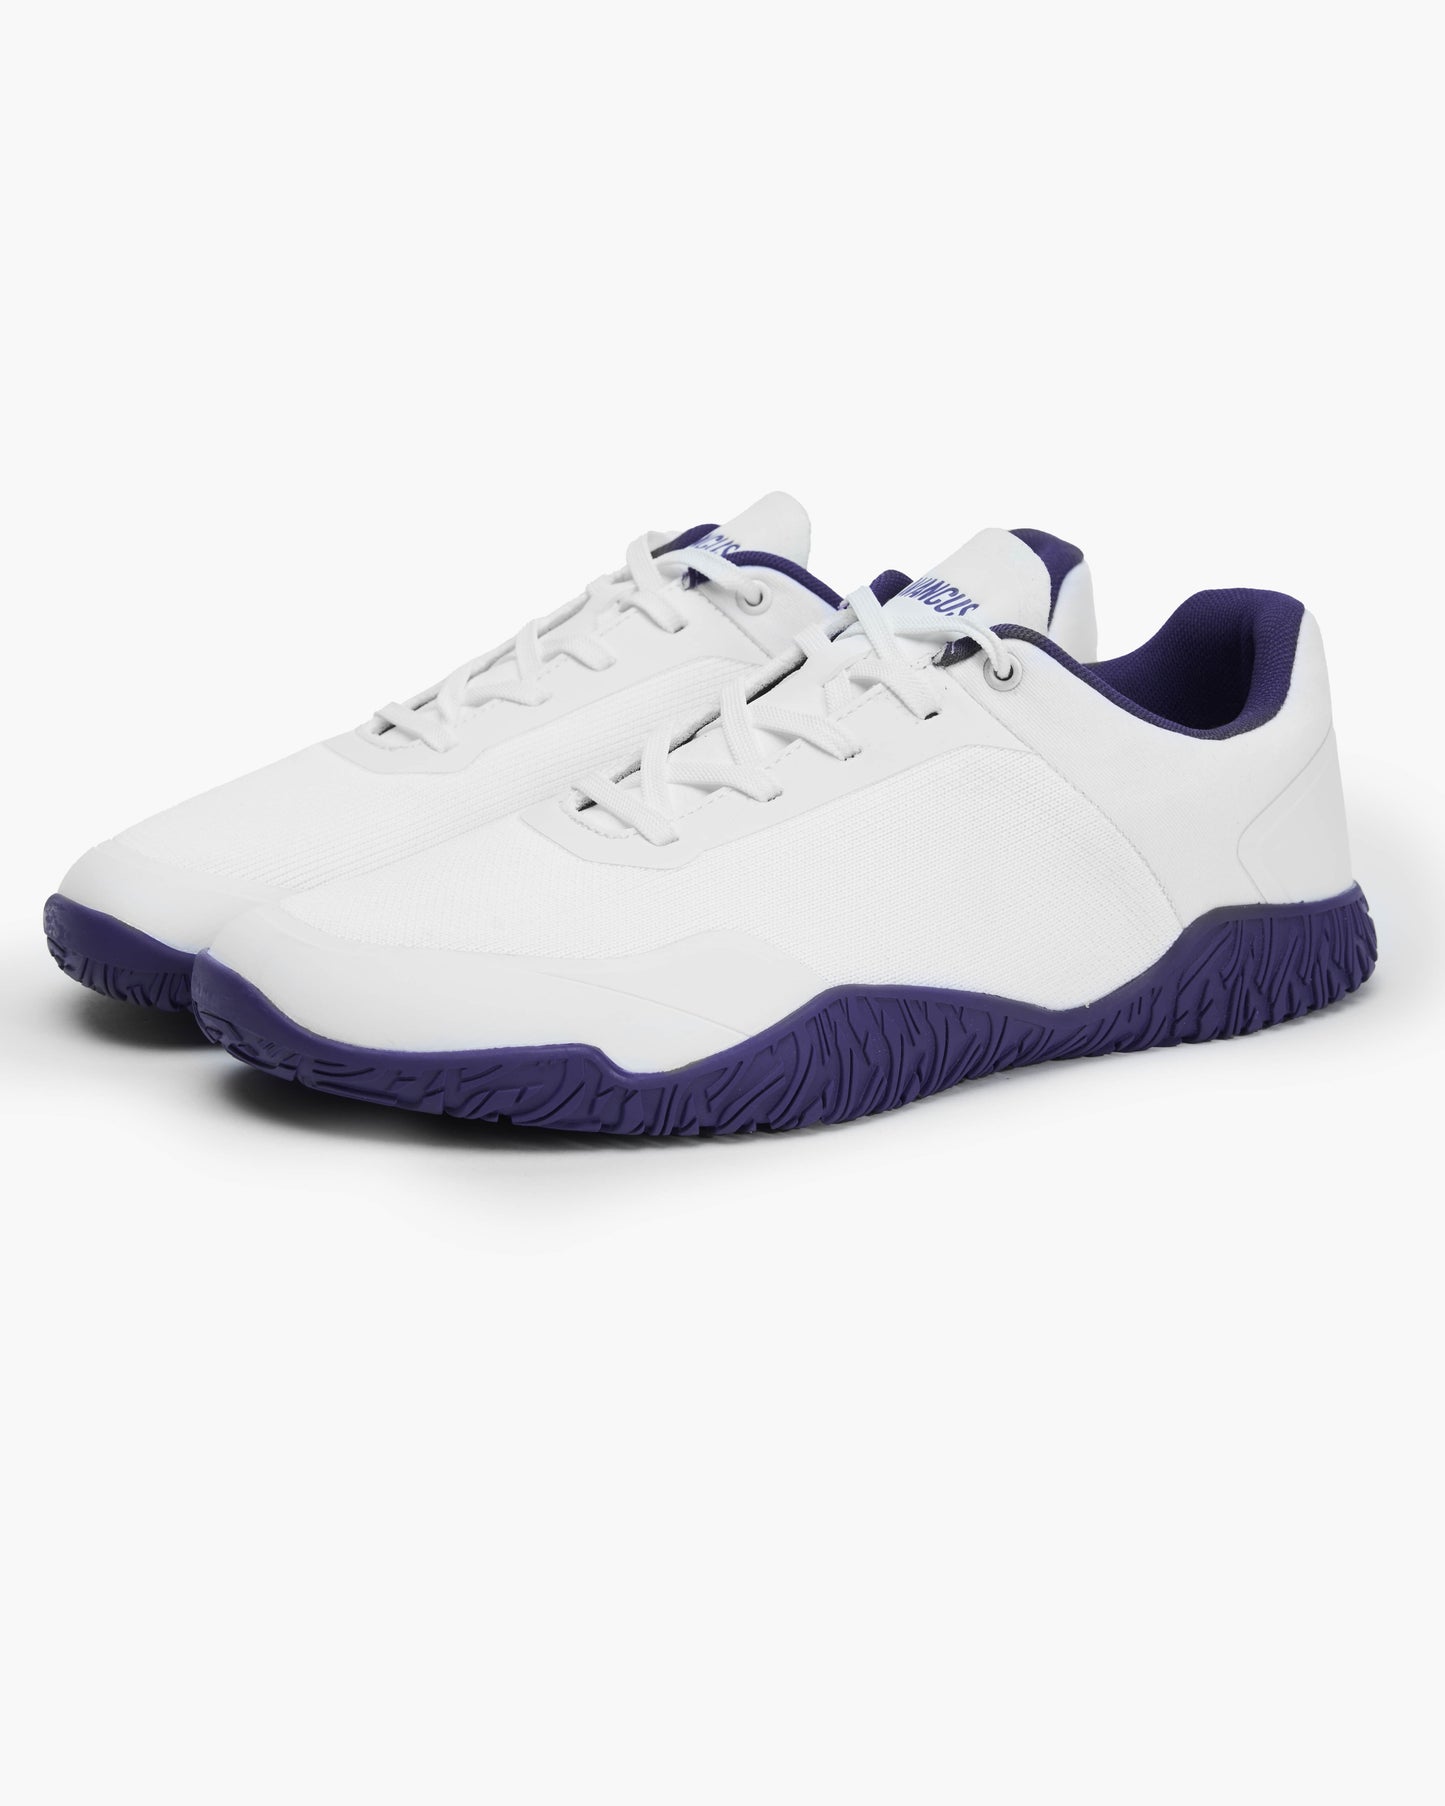 Apex Power V1.5 Shoes Purple